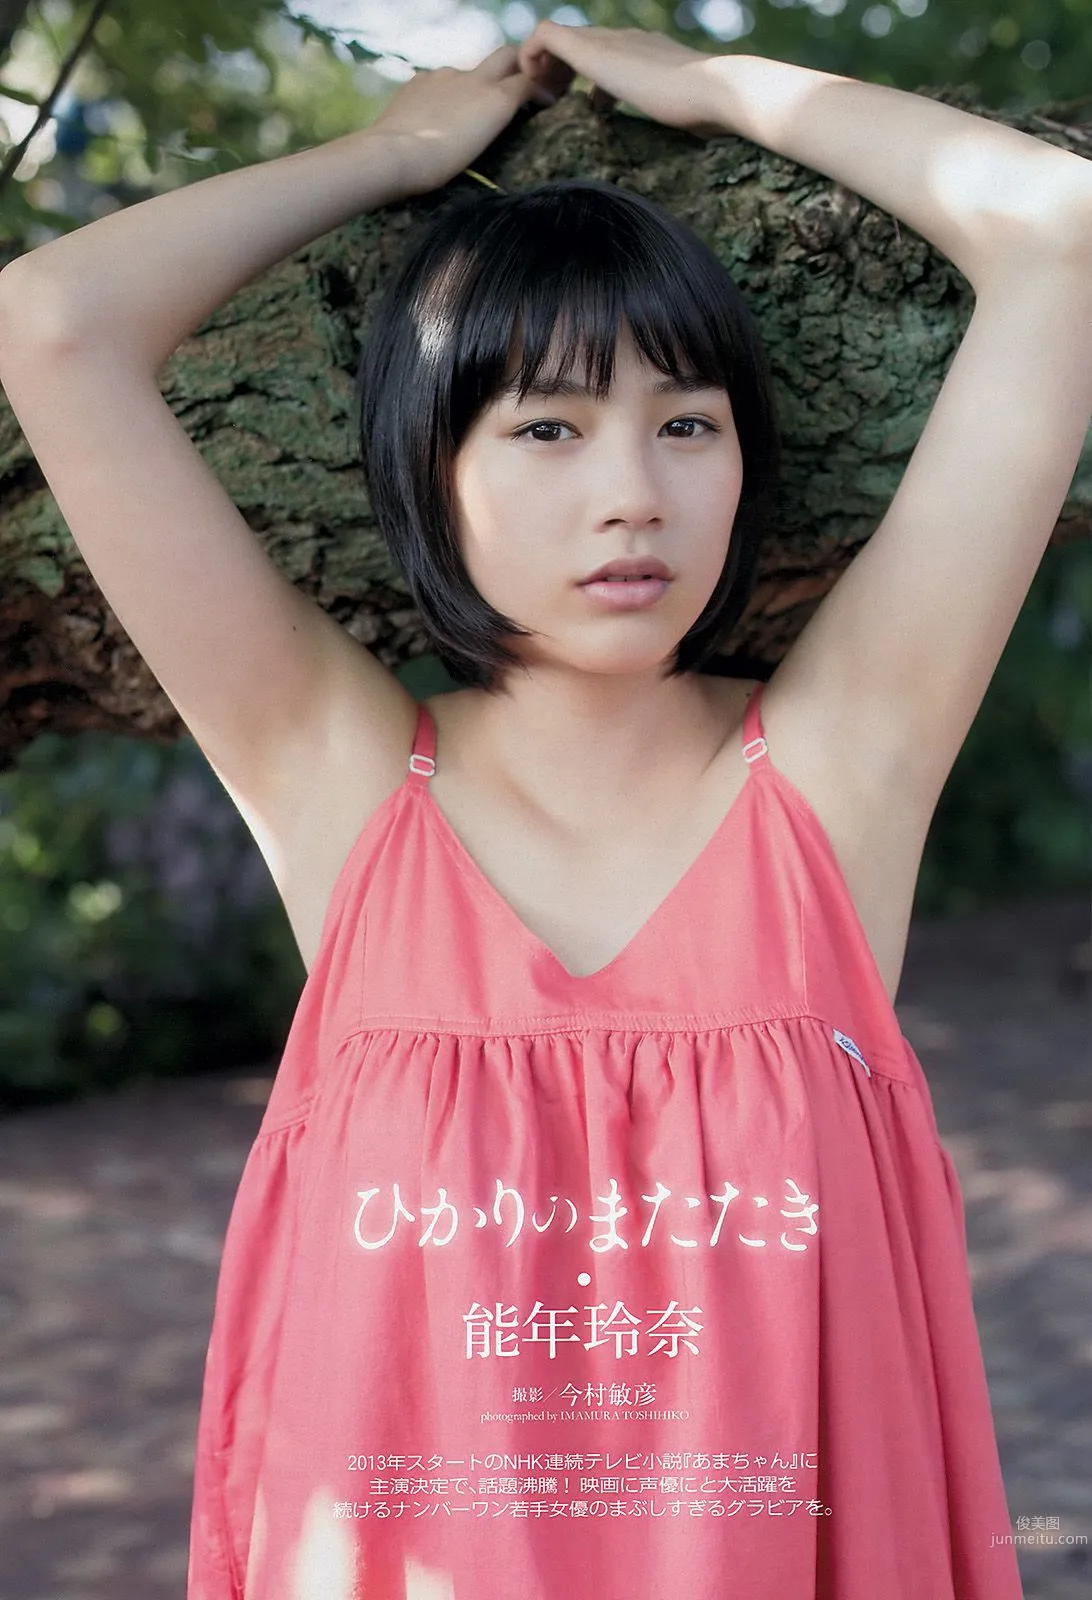 能年玲奈 AKB48 石橋杏奈 亜里沙 Ili 太田千晶 [Weekly Playboy] 2012年No.45 写真杂志2